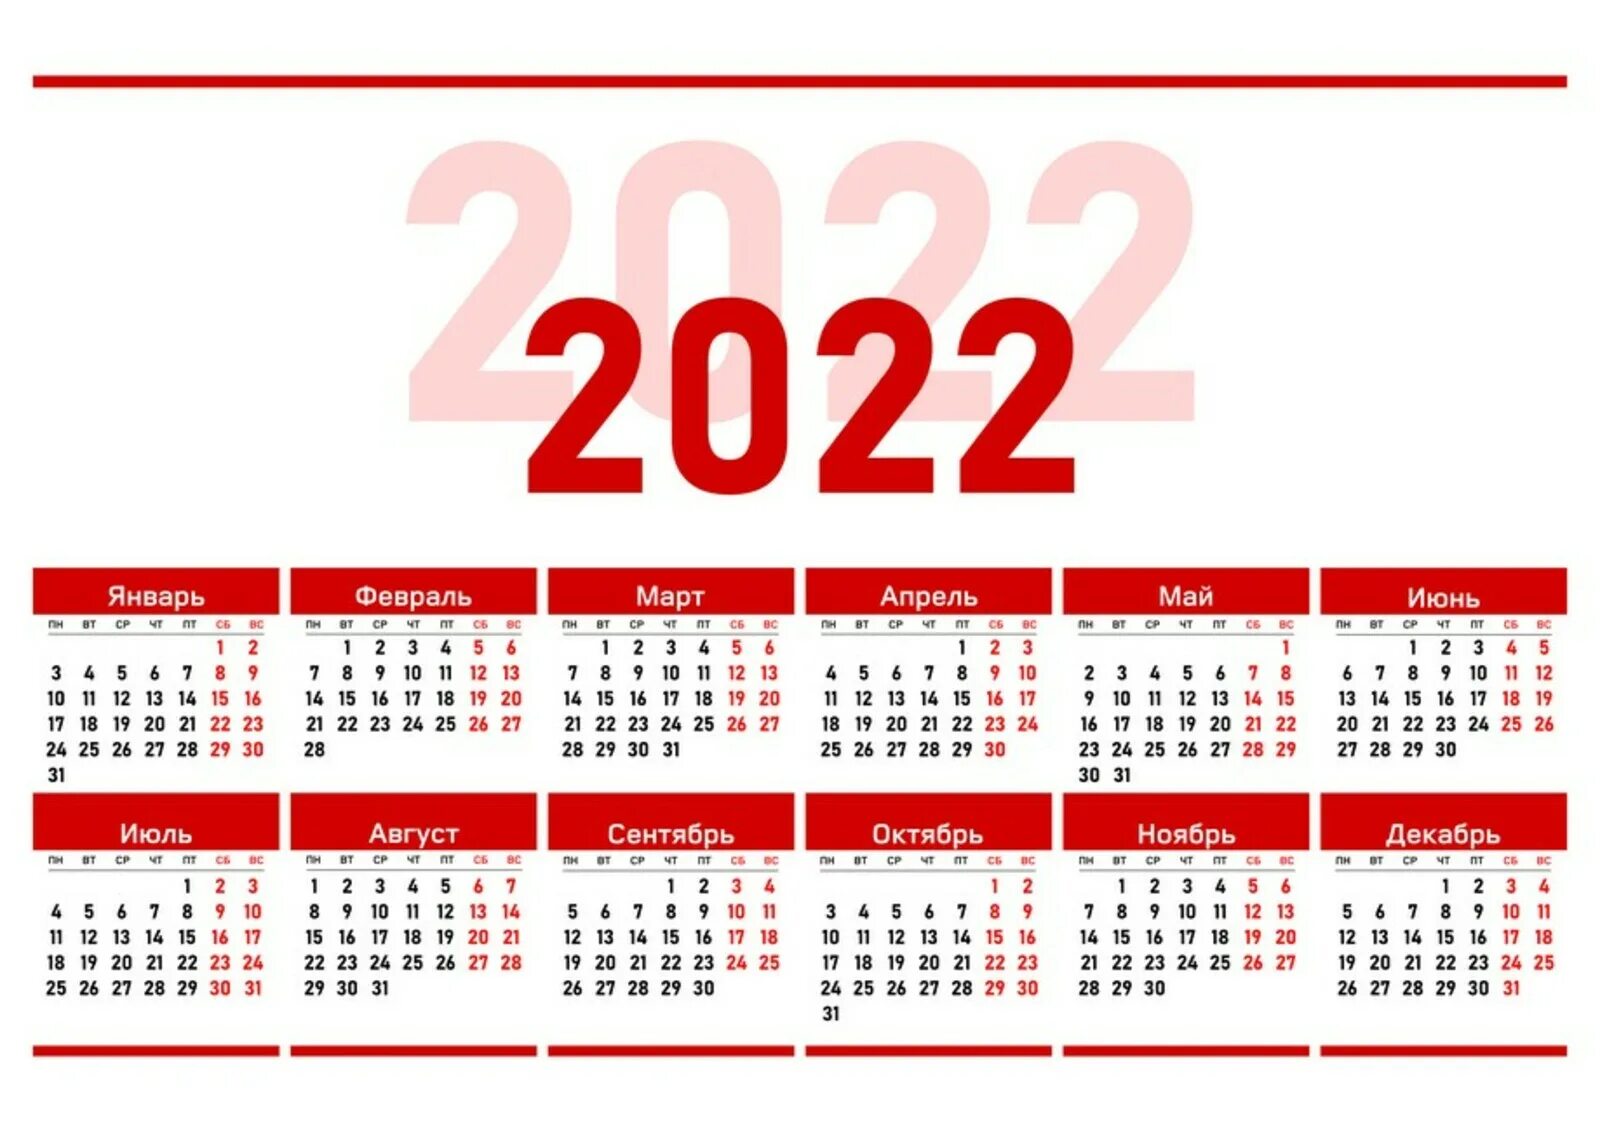 Производственный календарь 2022. Календарь на 2022 год ЛНР. Официальные праздники 2022 года в России. Выходные дни в 2022 году в России. Декабрь 30 выходной